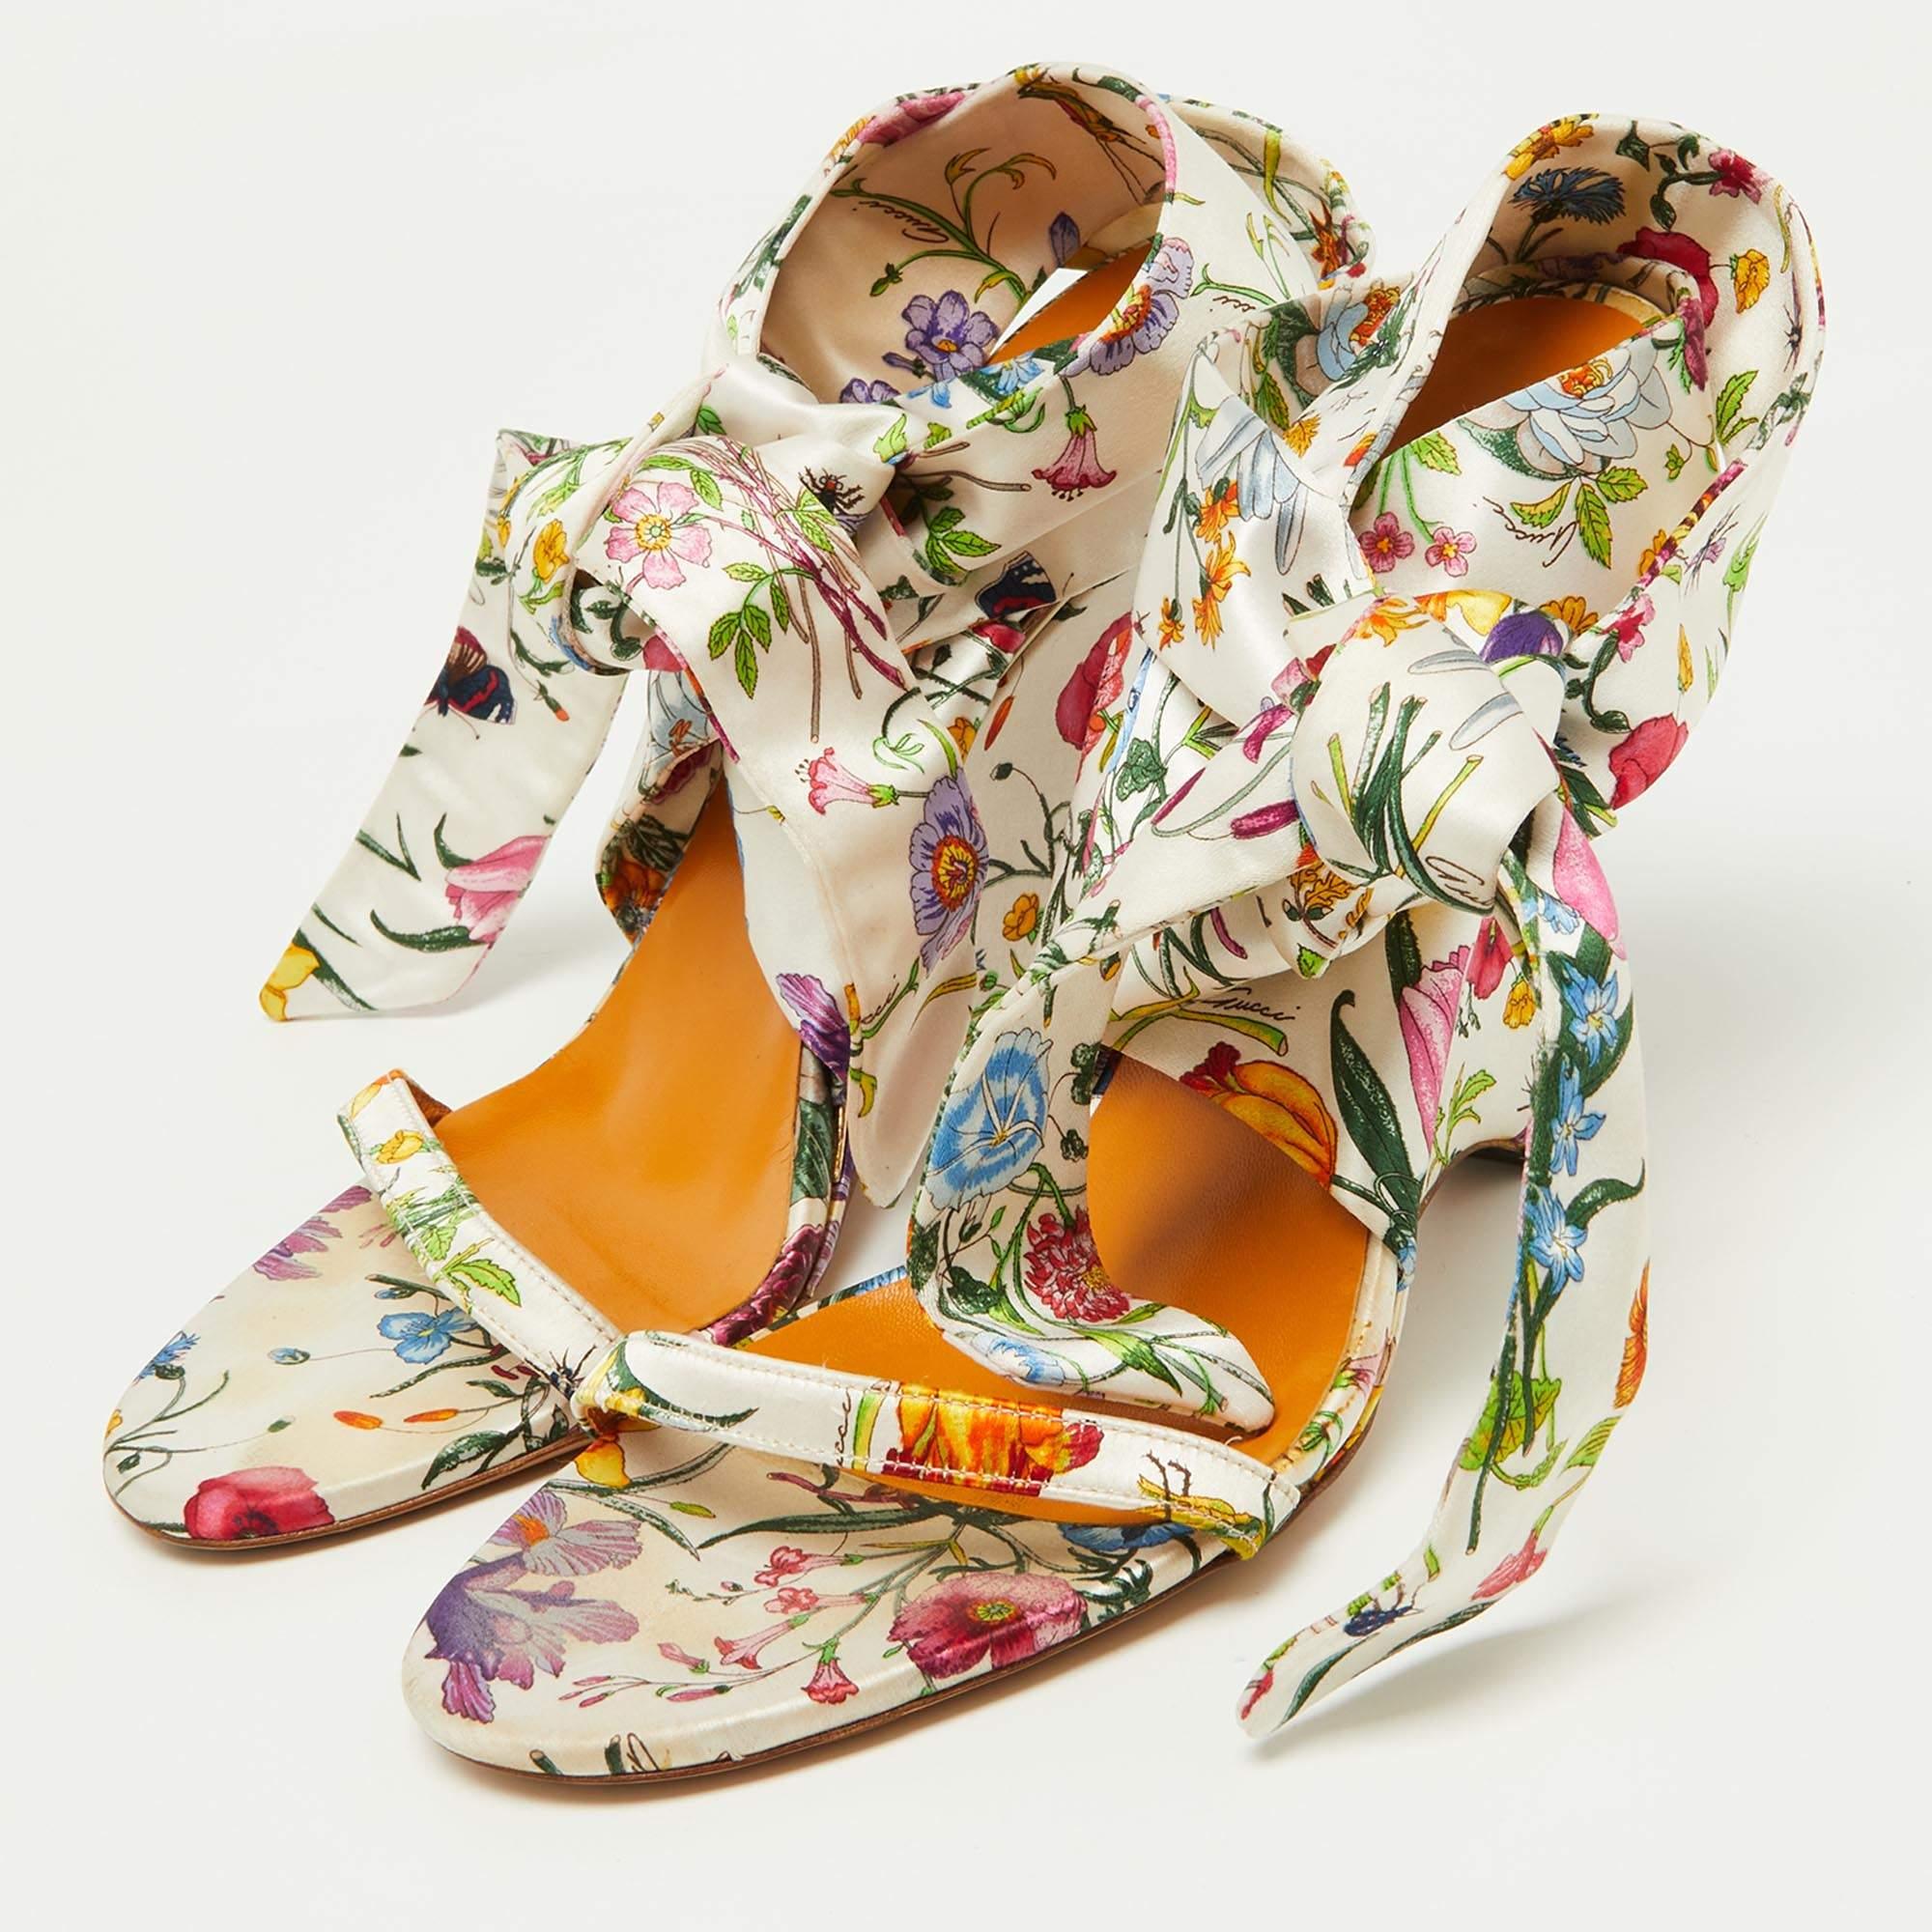 Les sandales de Gucci sont une paire parfaite pour styliser vos jolies robes d'été. Conçues dans un satin à imprimé floral et dotées d'une fermeture à nouer à la cheville, elles possèdent des talons compensés à porter toute la journée.

